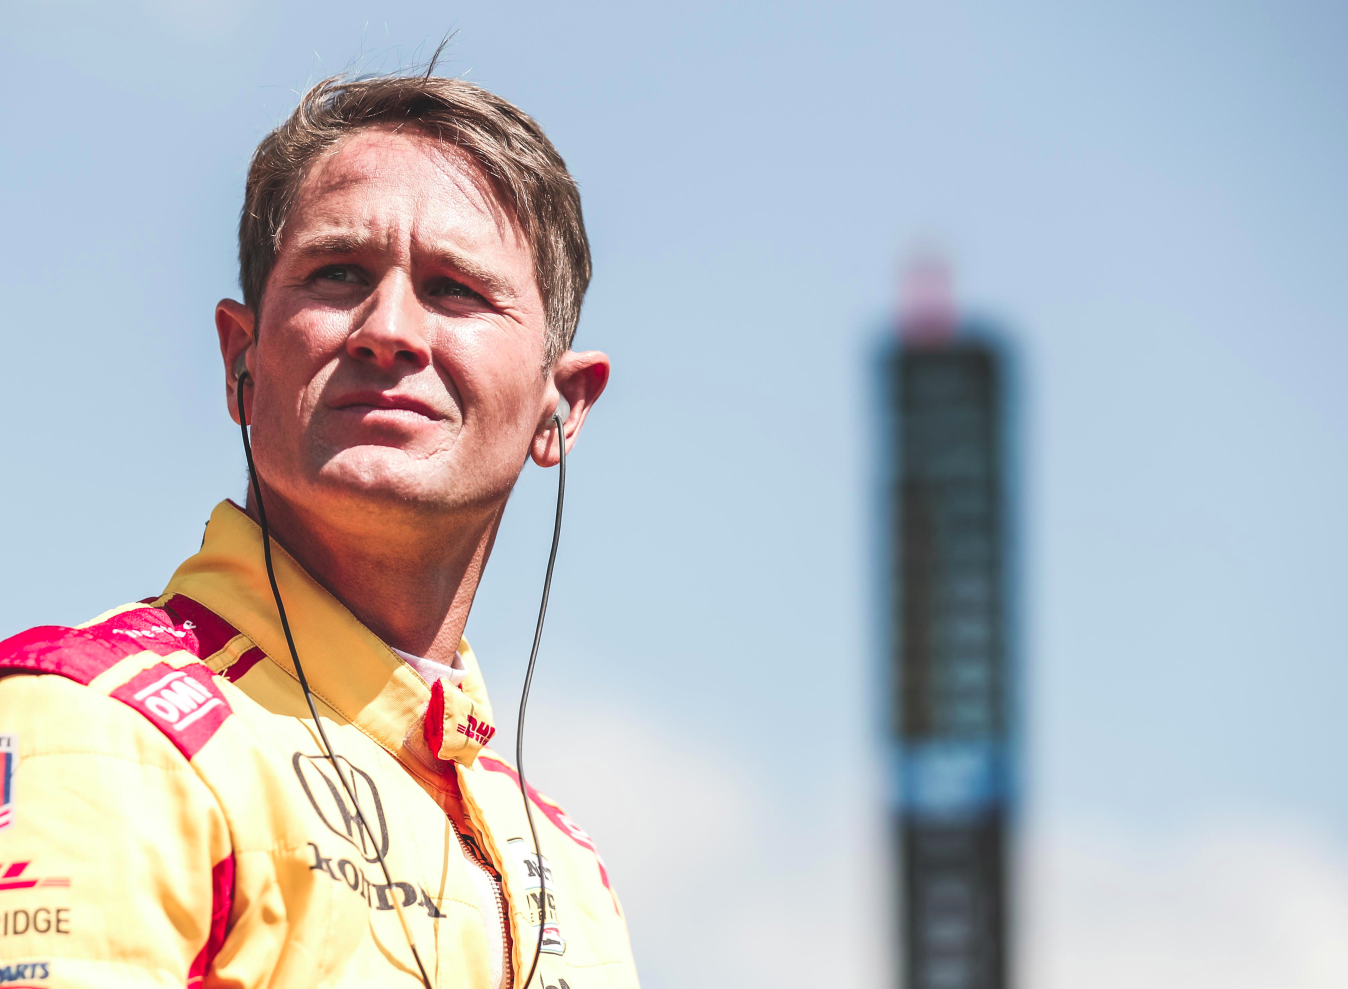 “Az Indy 500 számomra egy életforma” – Hunter-Reay visszatér a legendás versenyre